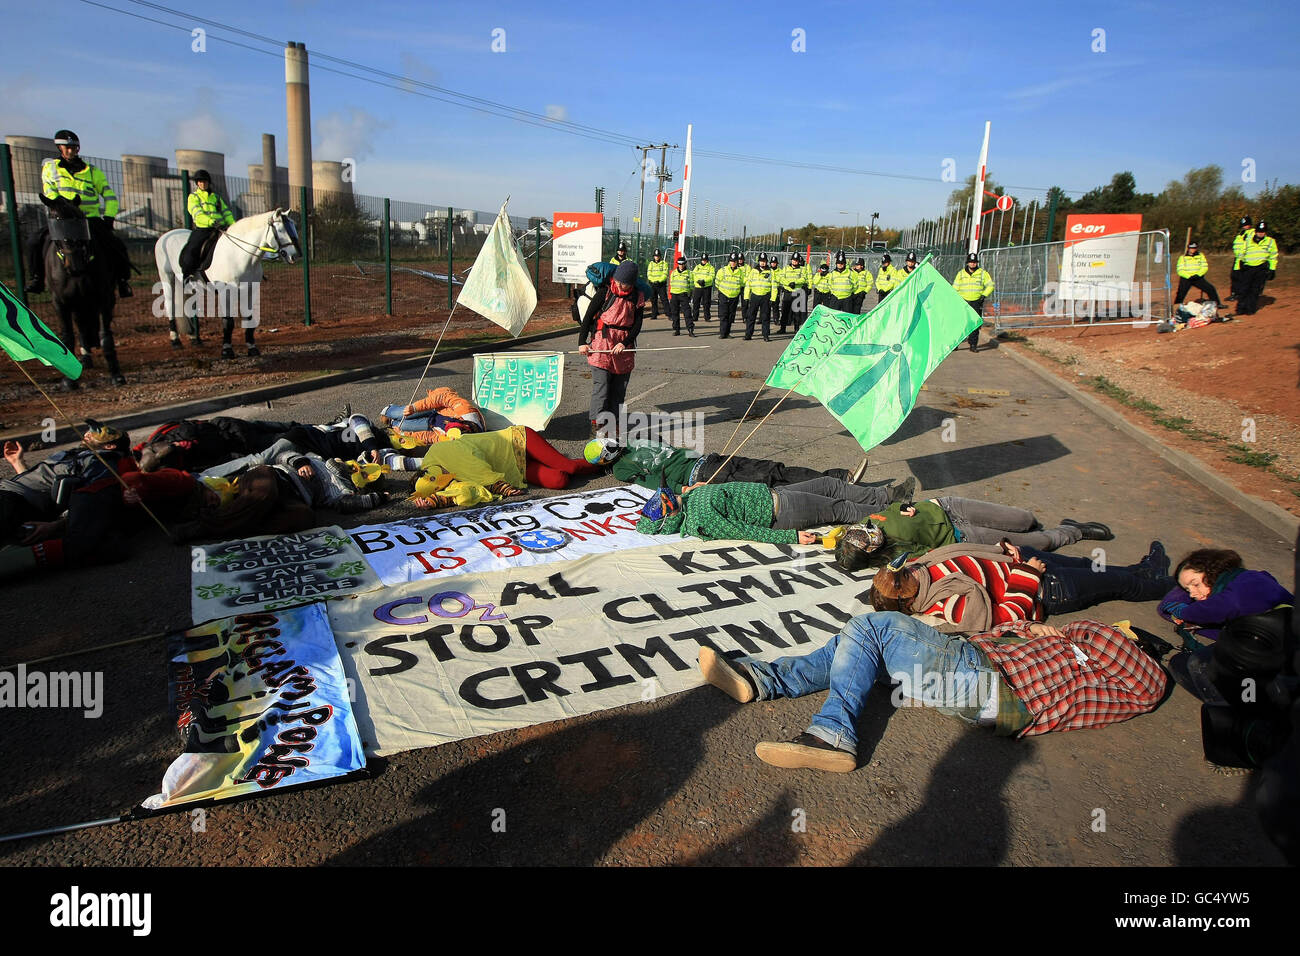 Demonstranten vor Ratcliffe im Kraftwerk Soar während der Proteste gegen den Klimawandel. Stockfoto